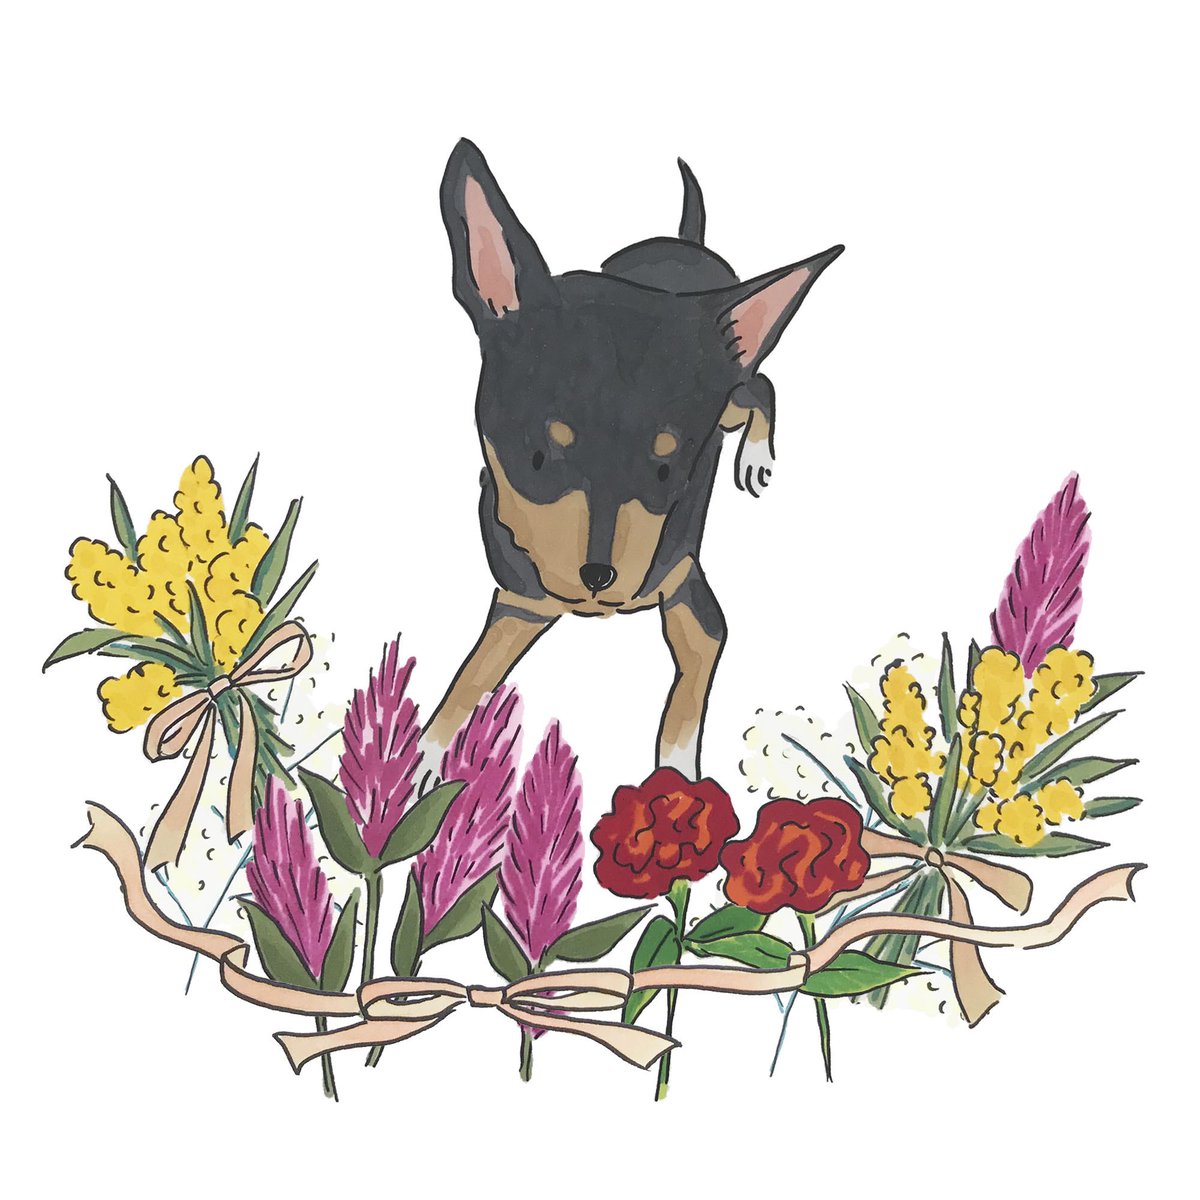 Omami イラストレーター Di Twitter ミニチュア ピンシャー こんな冬の花を集めた花束とリボンの飾りもかわいい ミニチュアピンシャー 小さなドーベルマンと呼ばれることもあるそう たしかに似てる 犬部 犬好きな人と繋がりたい 犬イラスト ピンシャー